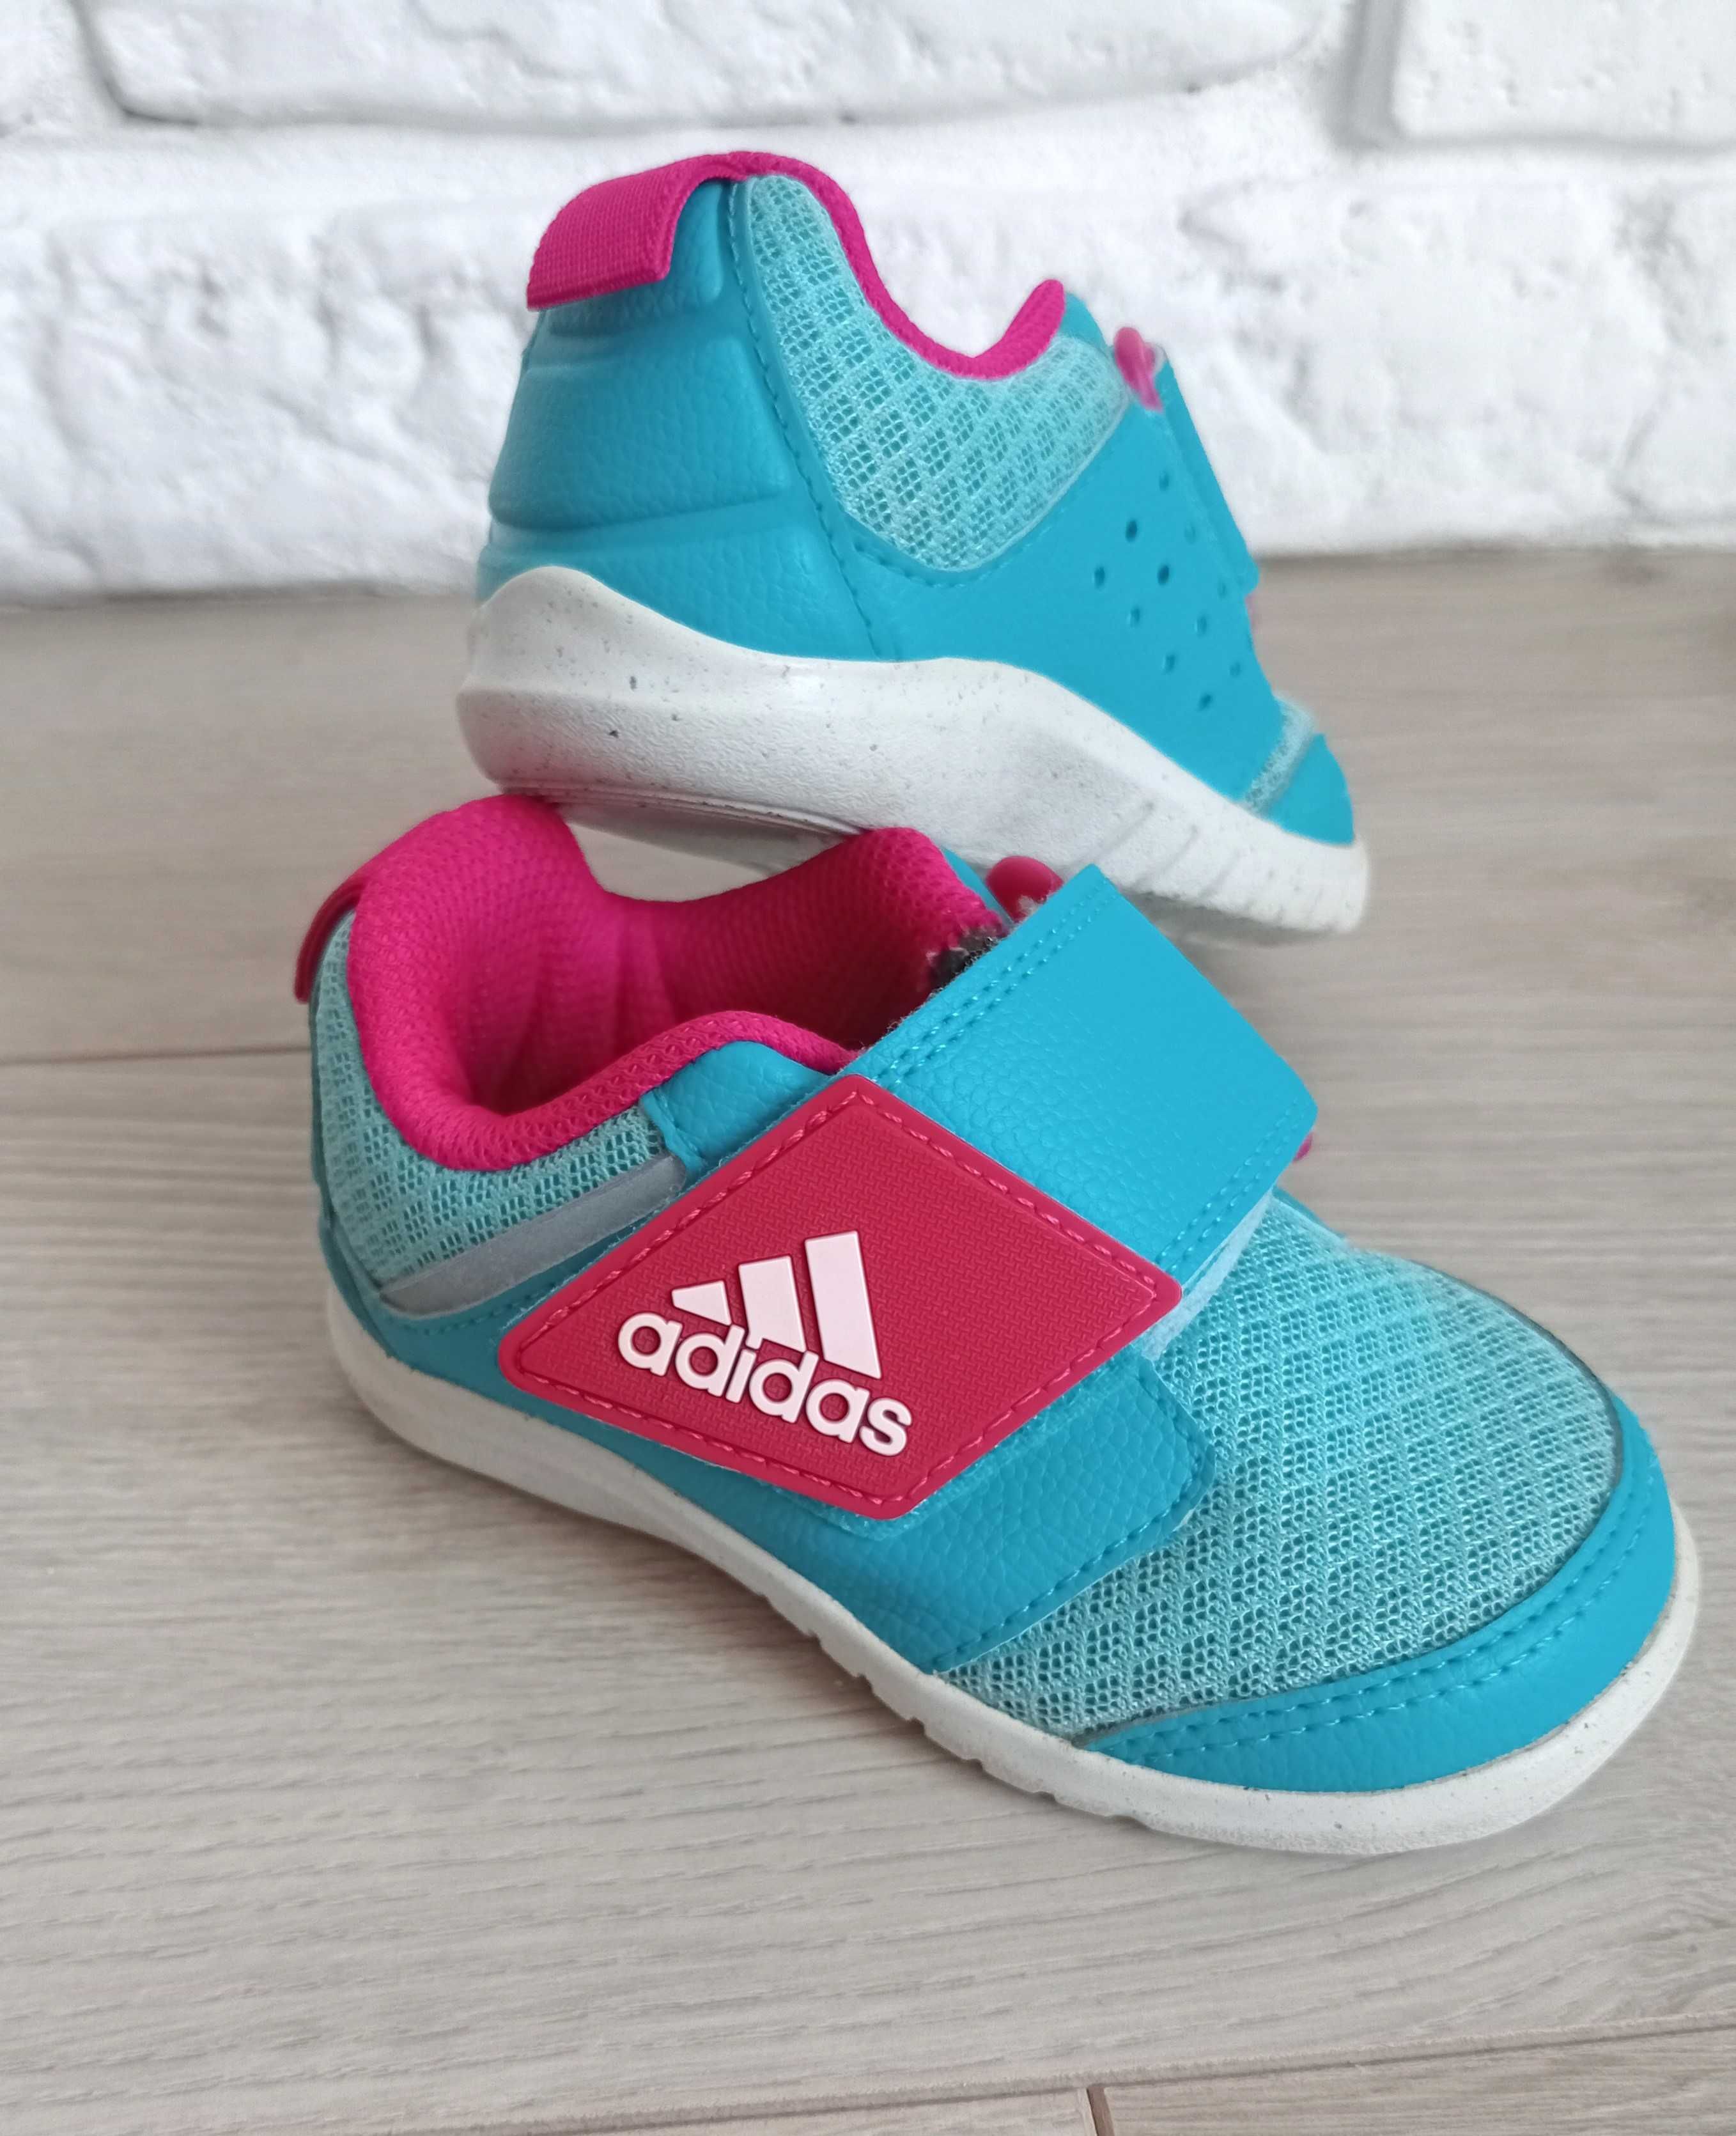 Adidas buciki sportowe dla dziewczynki na rzep roz.20 roż, błękit